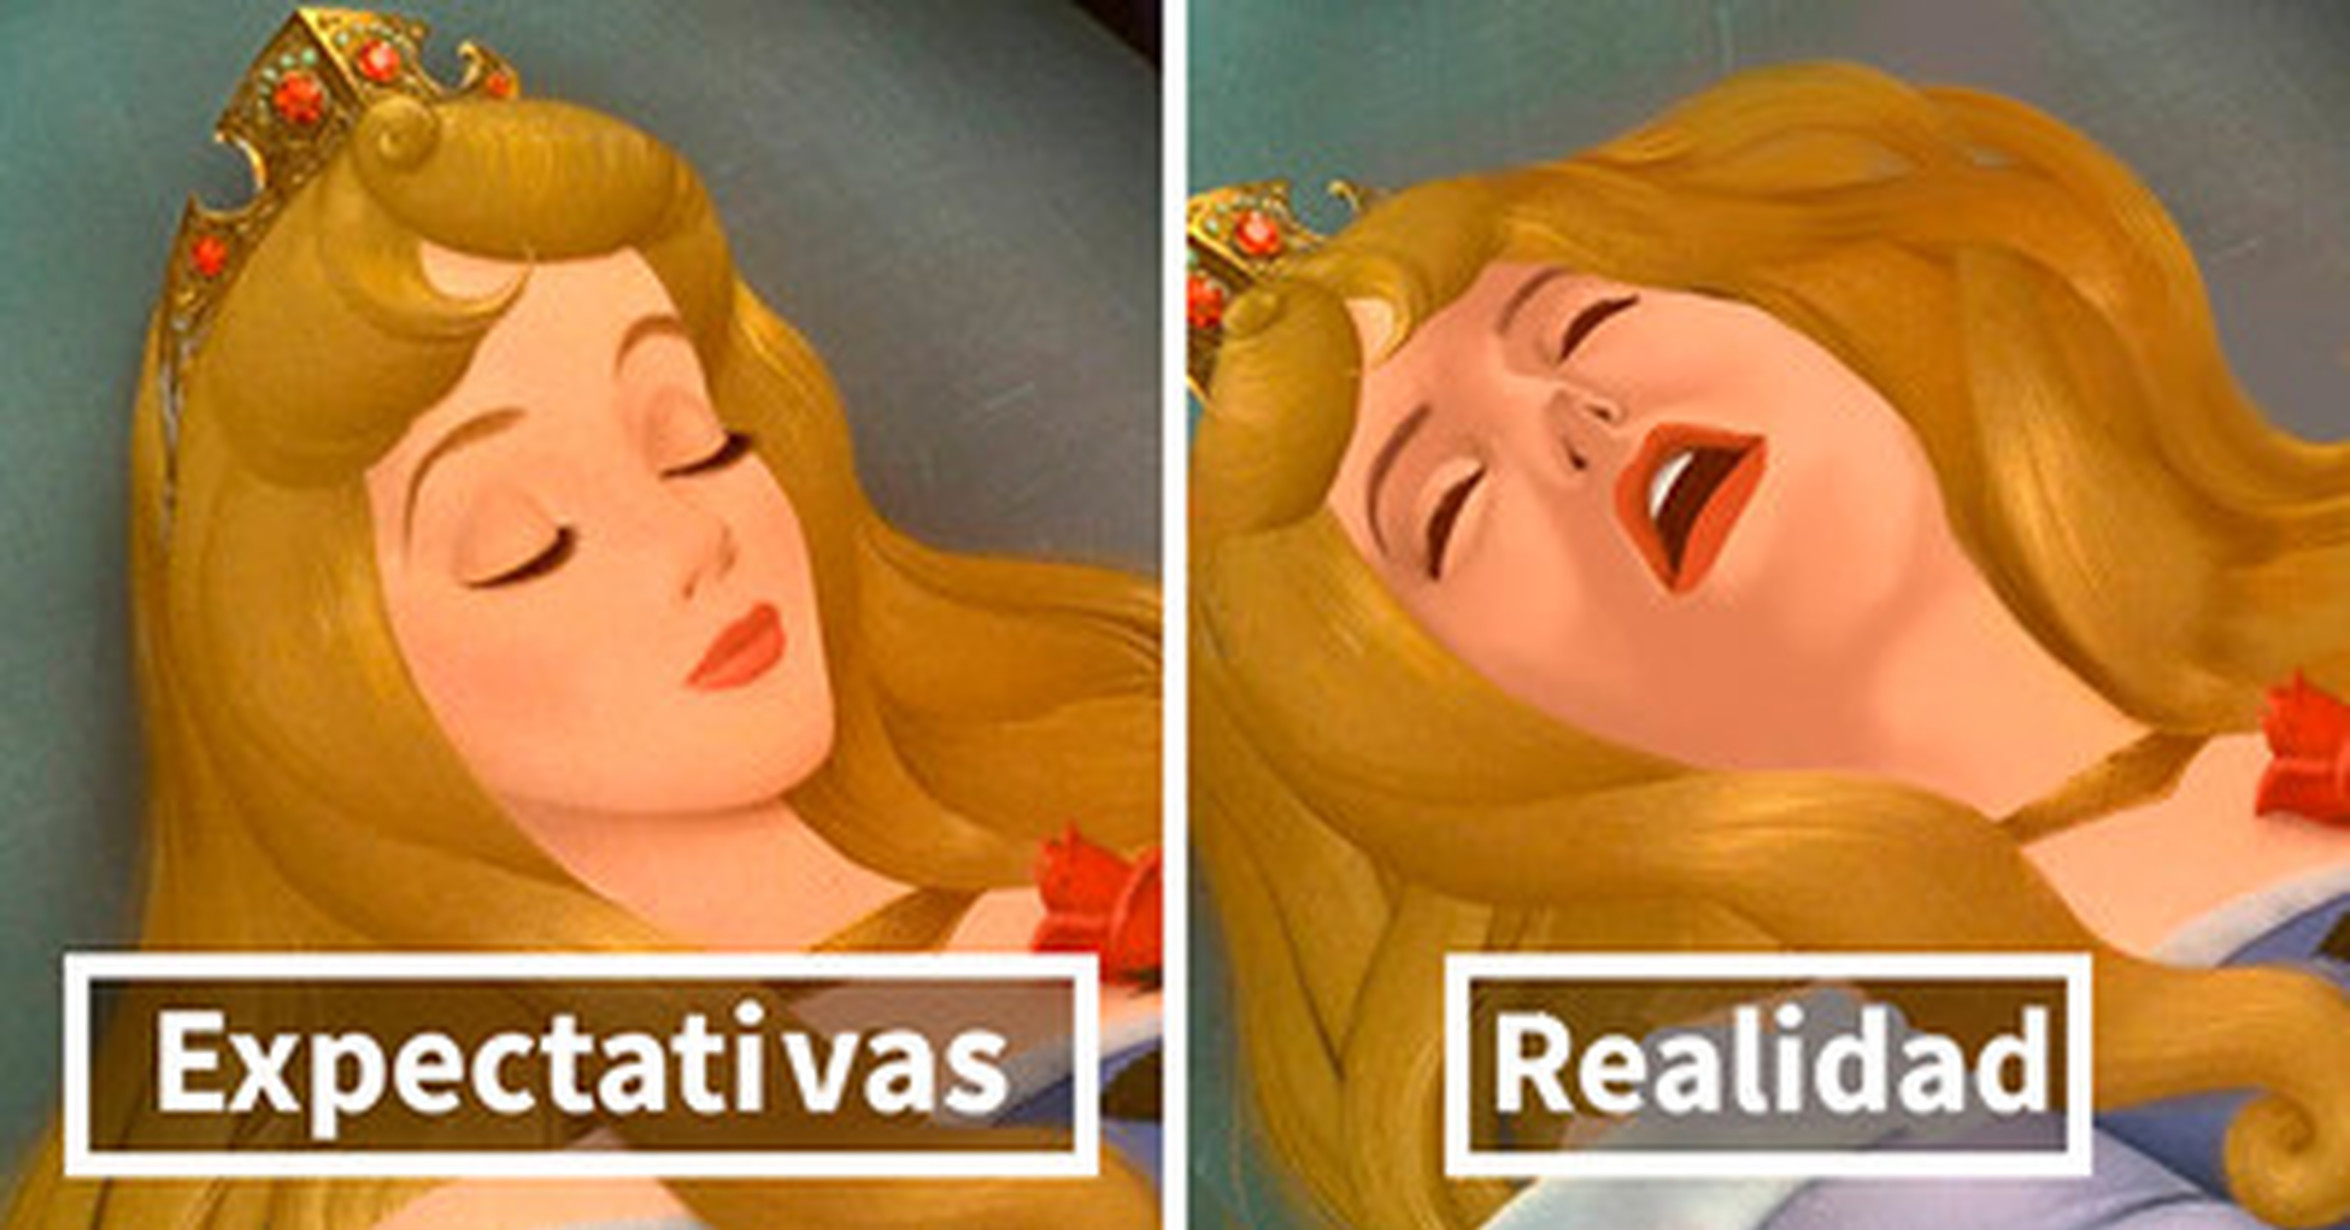 Este artista reimagina a las princesas Disney de un modo más realista